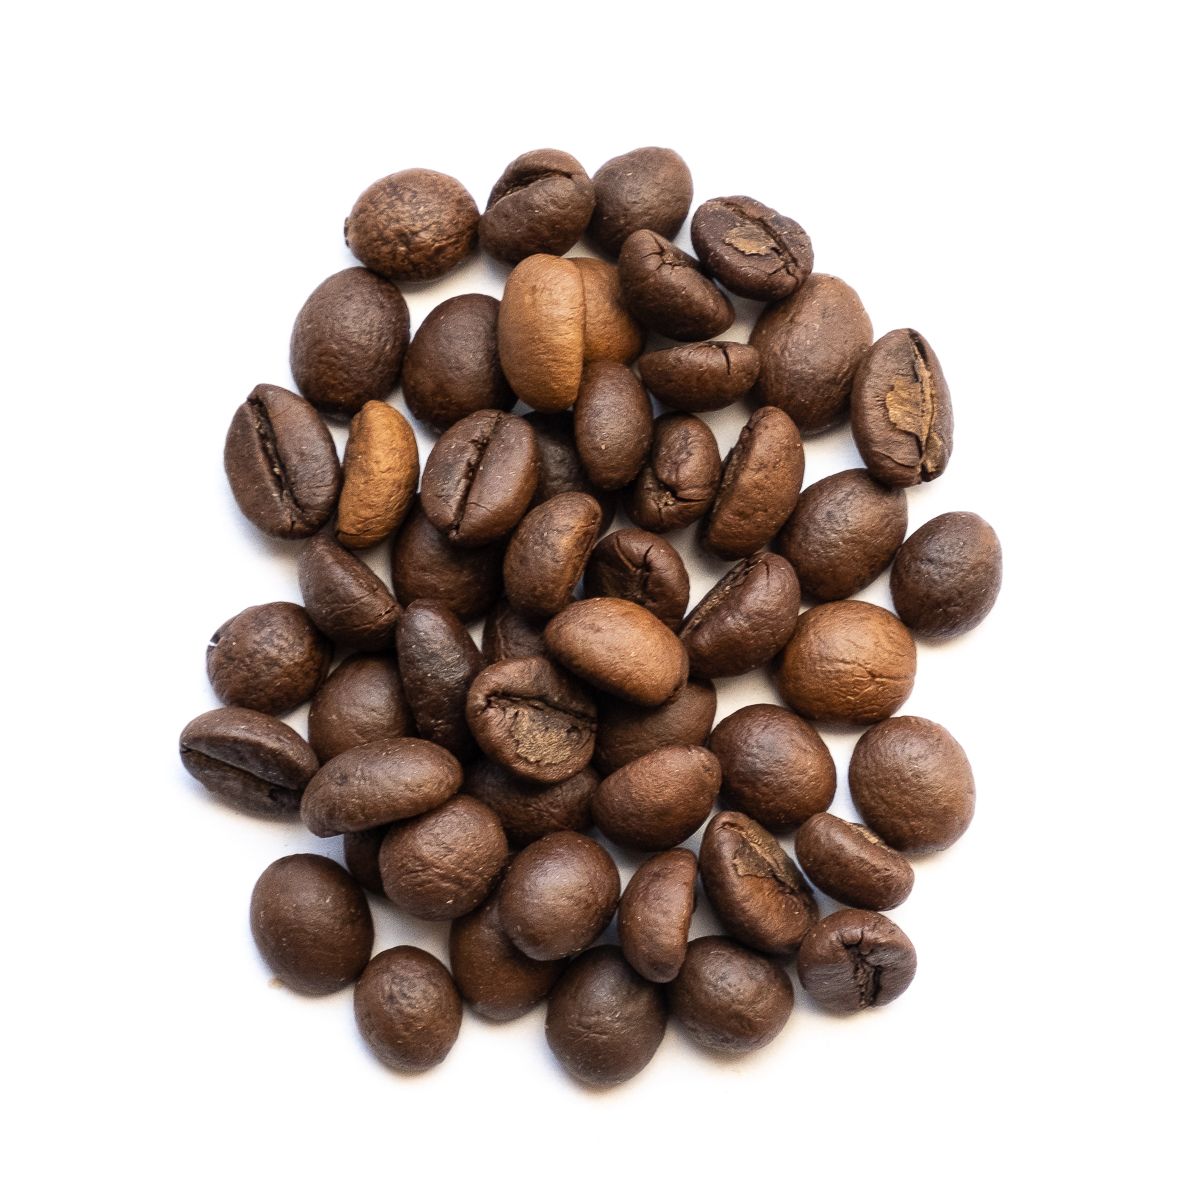 Etiopie Djmimah Gr. 5, unwashed 100% arabika 250g - KK000801-01 Orientcaffé káva